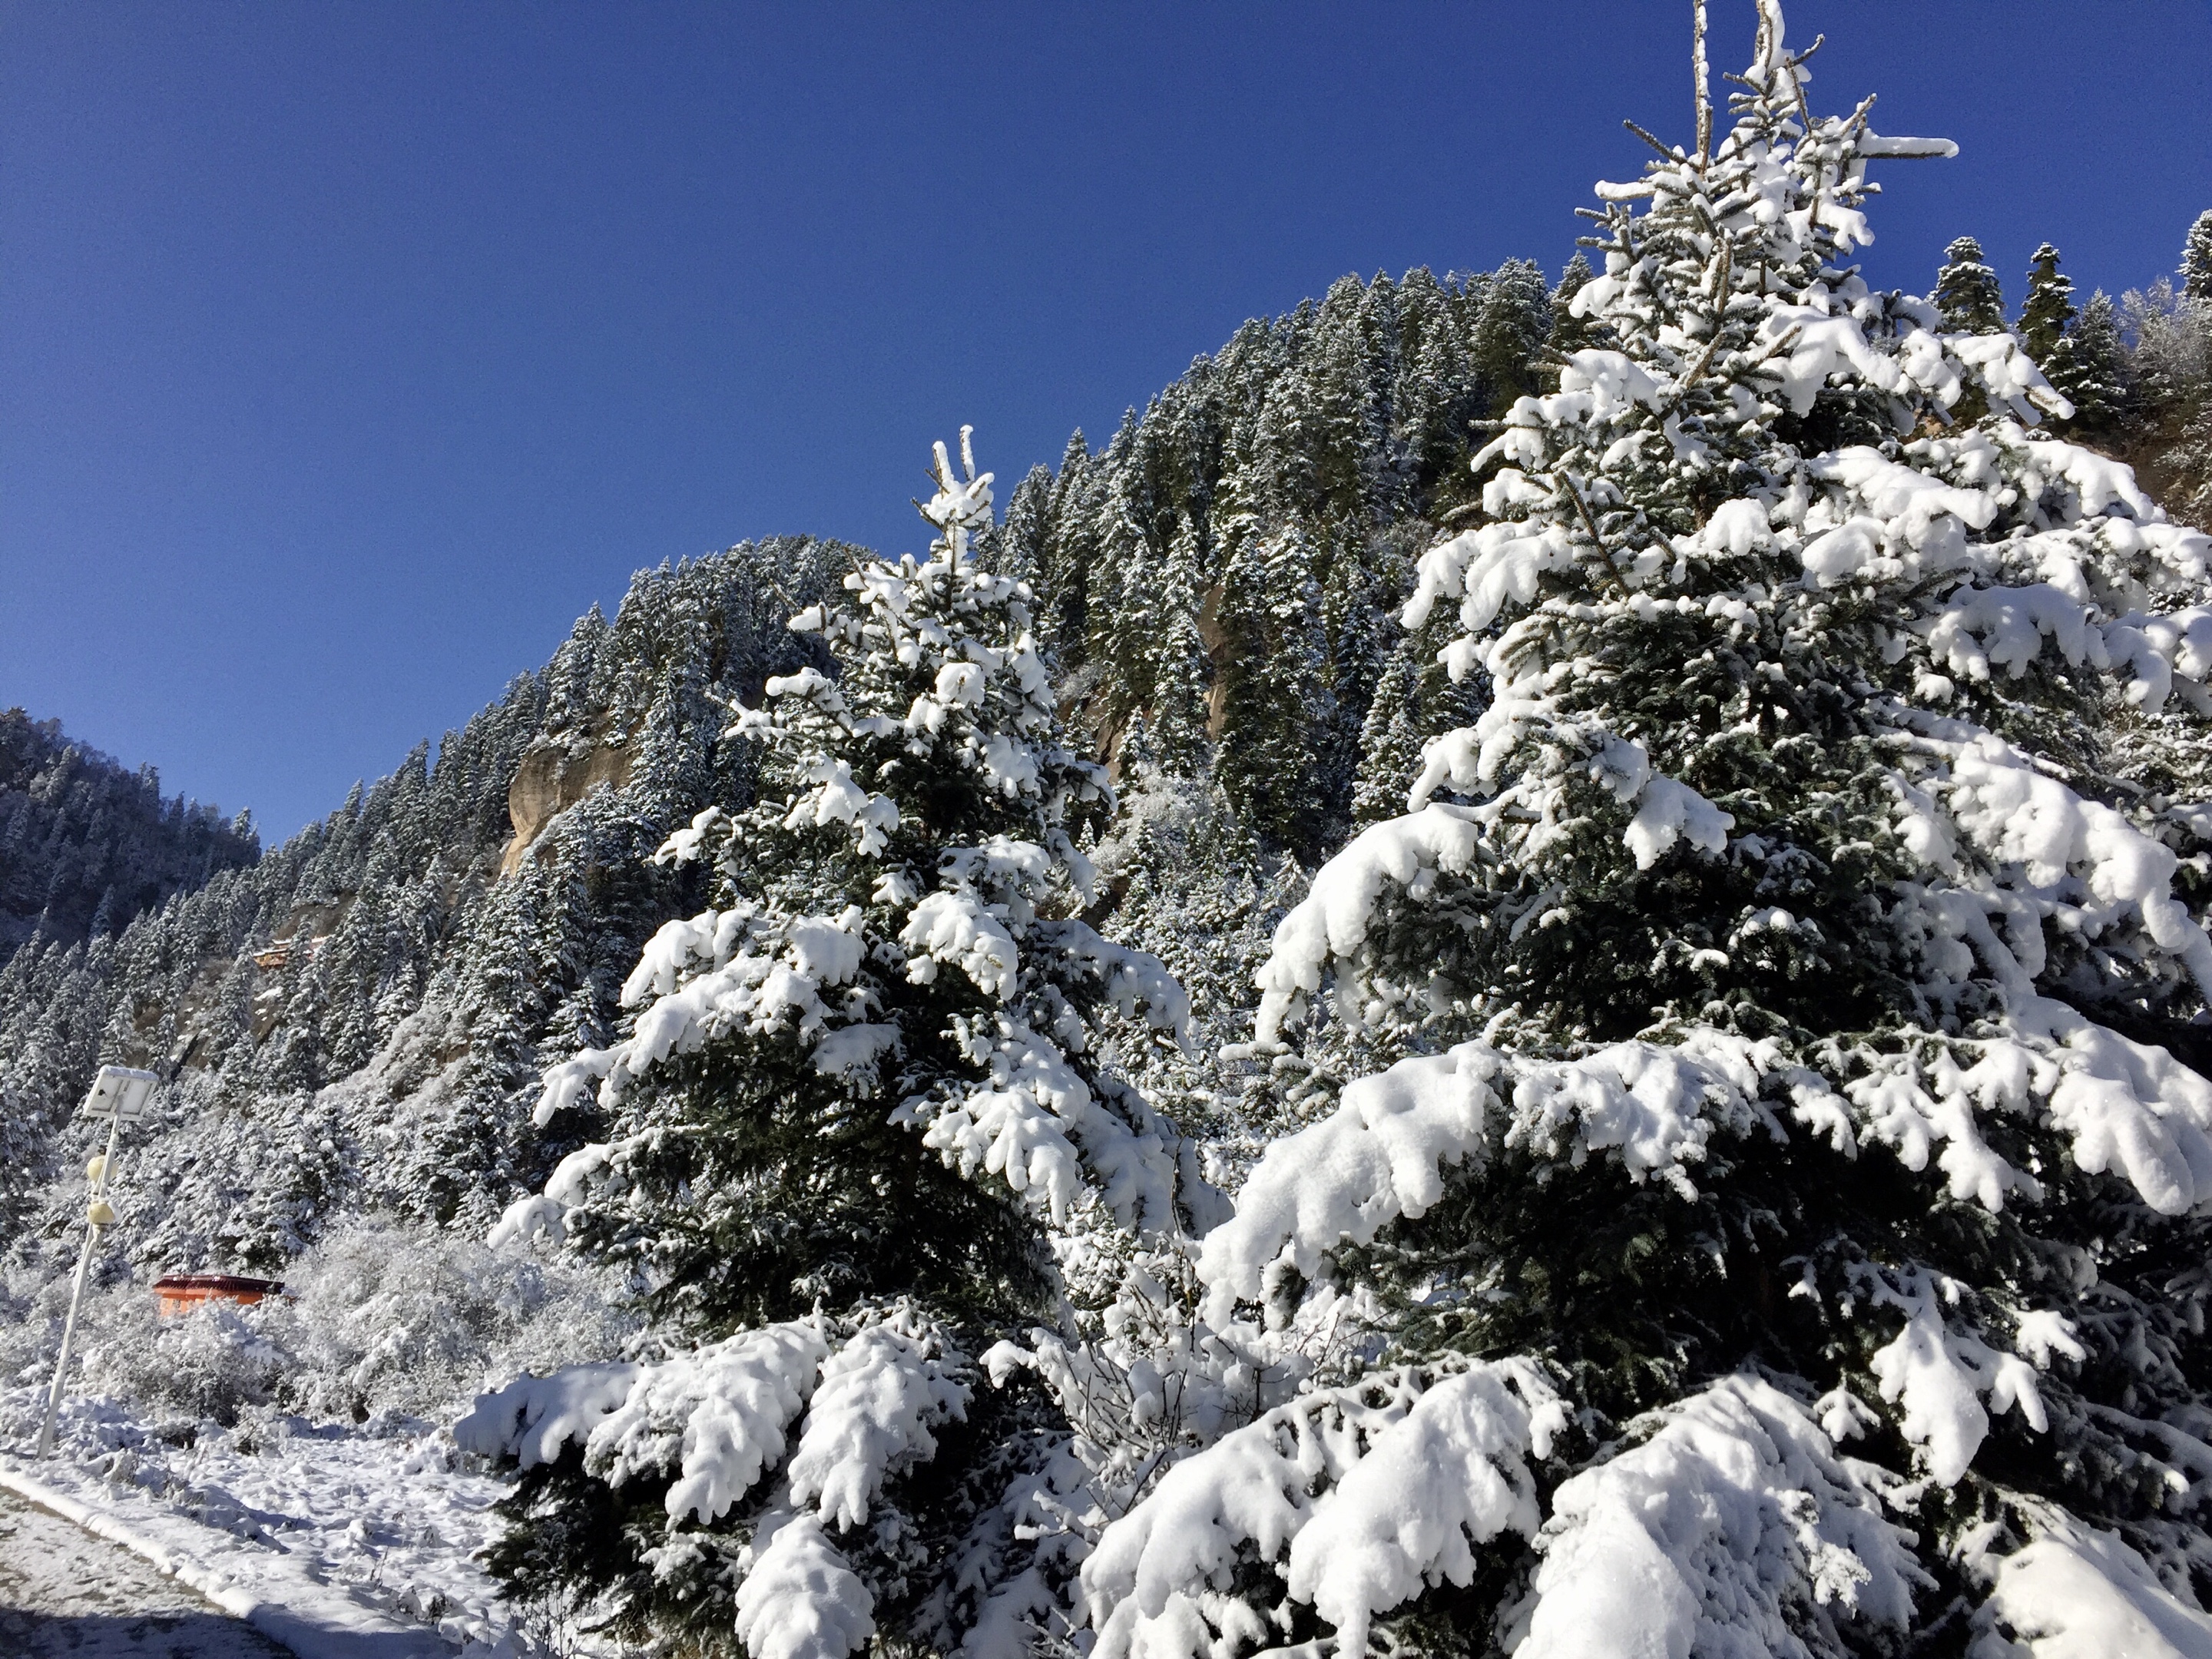 大雪压松树图片大全图片